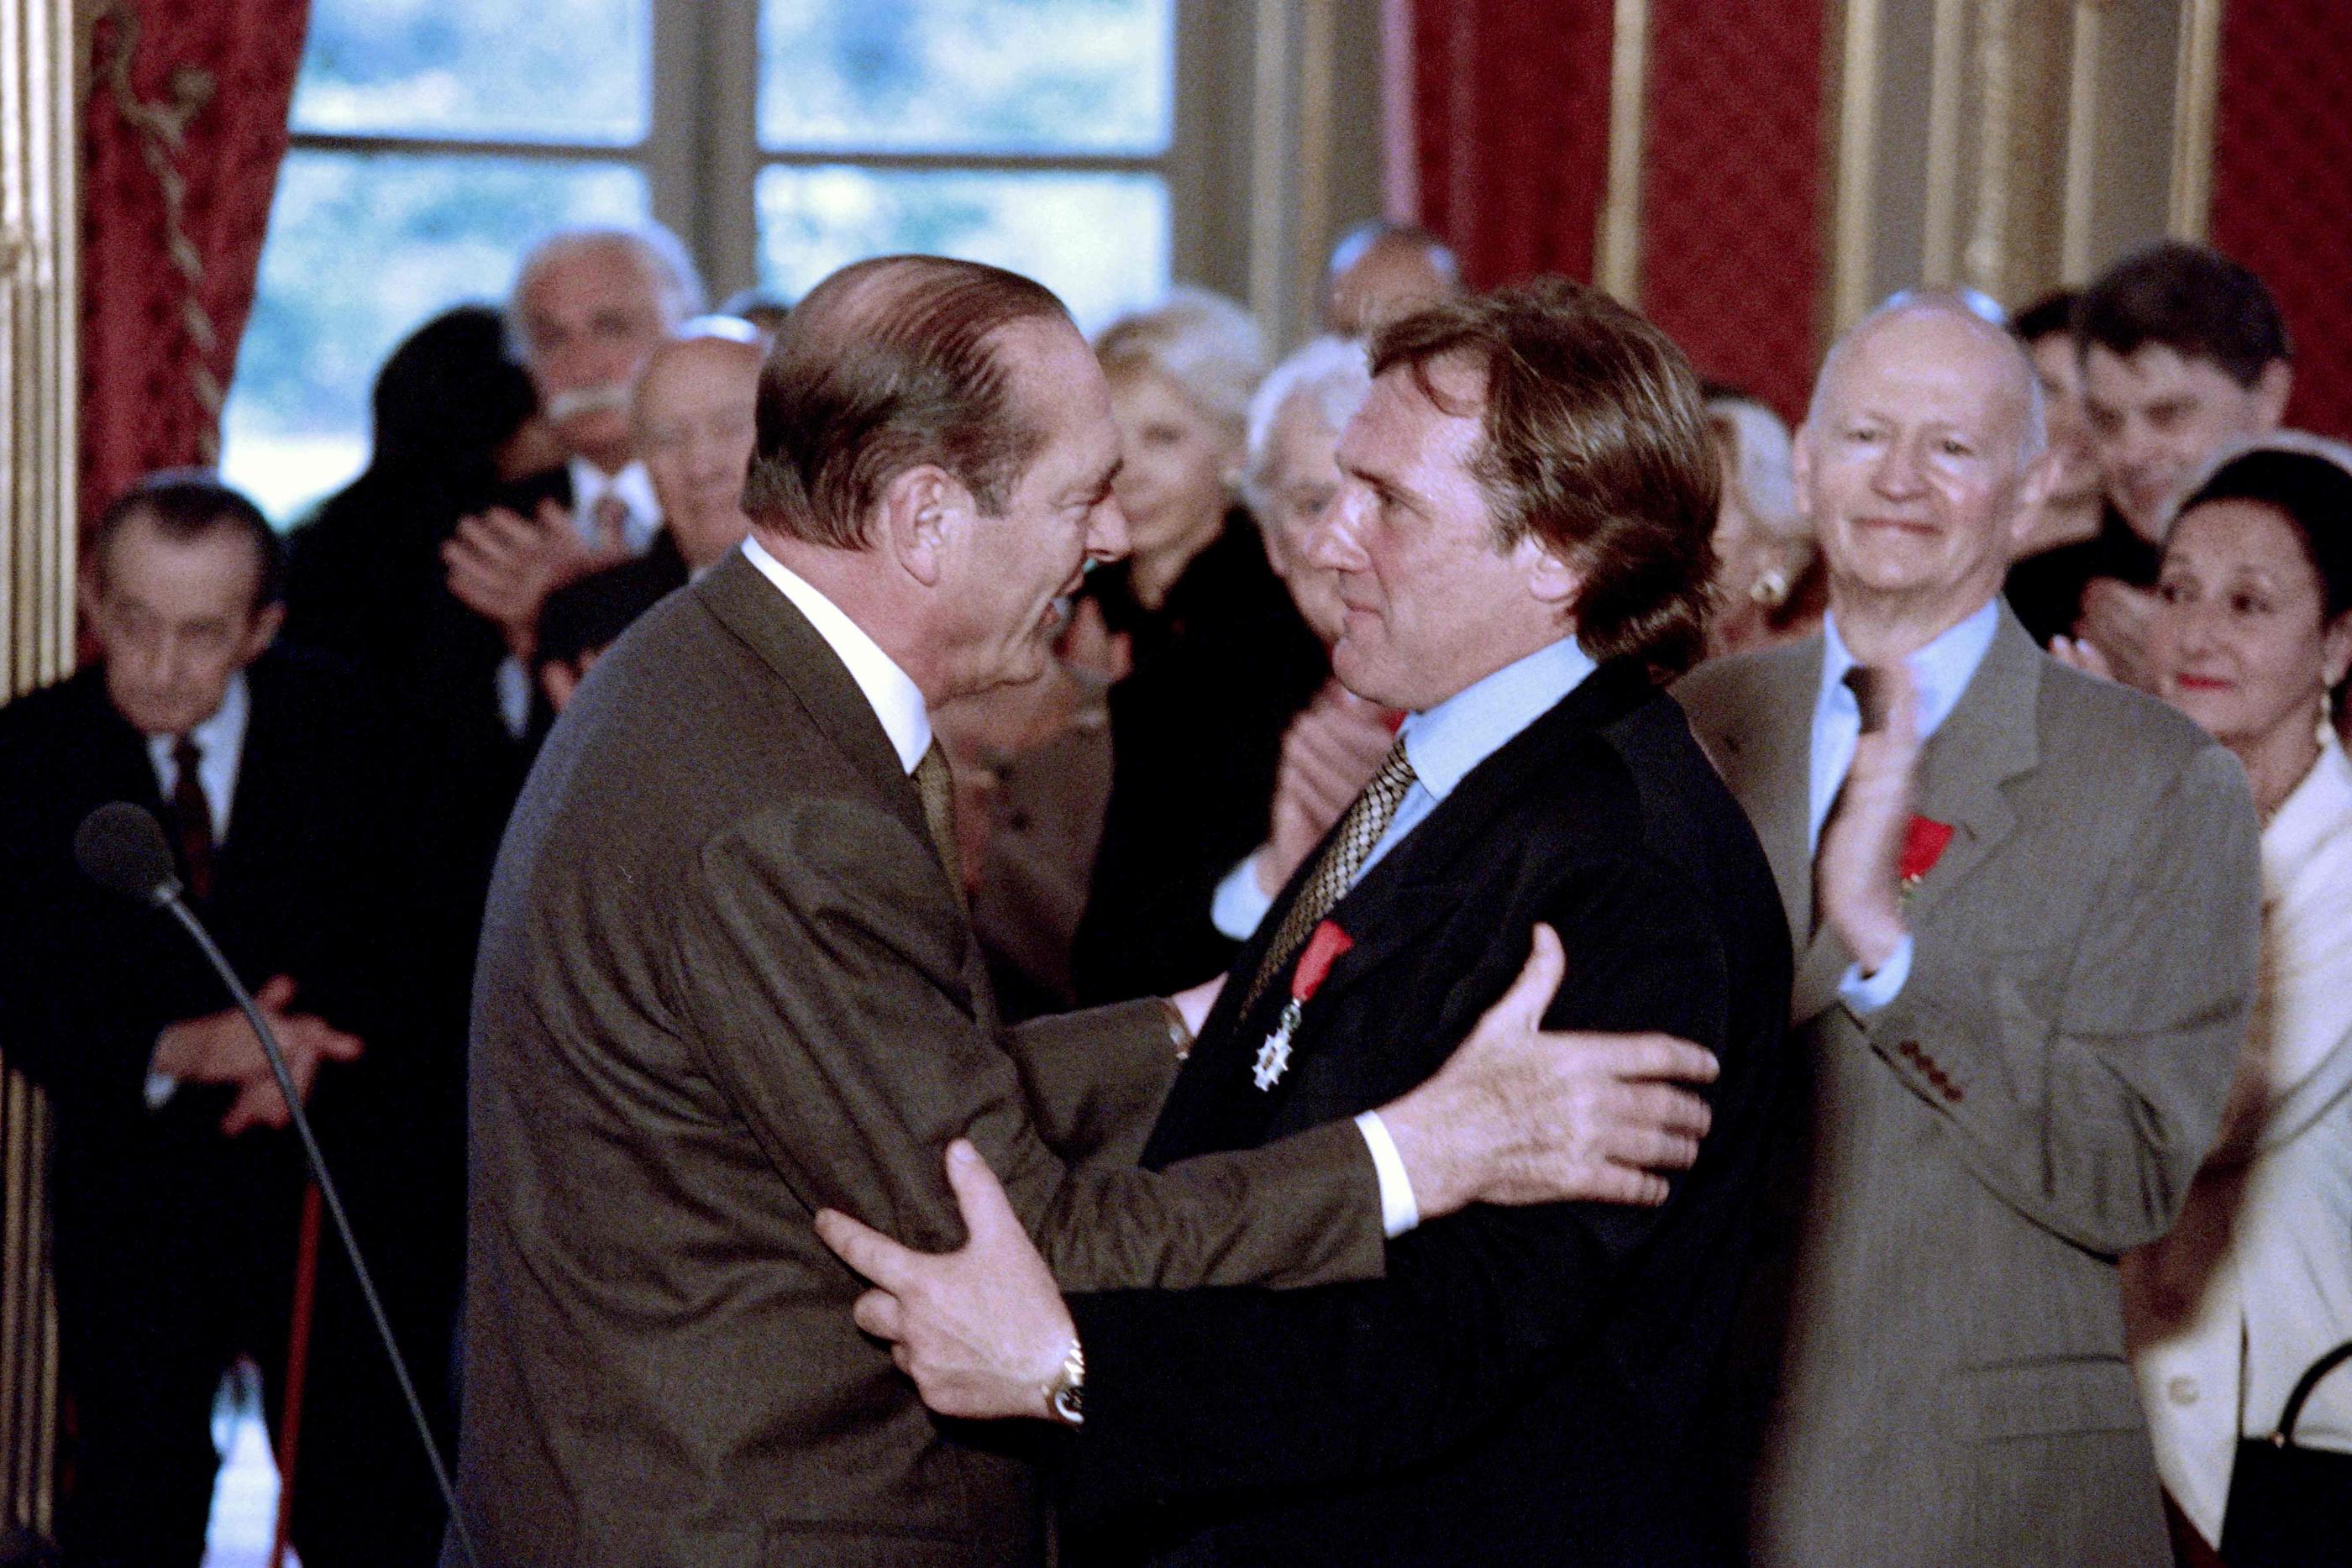 Le 2 mai 1996, Gérard Depardieu avait reçu la Légion d'honneur des mains de Jacques Chirac, alors président de la République. AFP/Vincent Amalvy